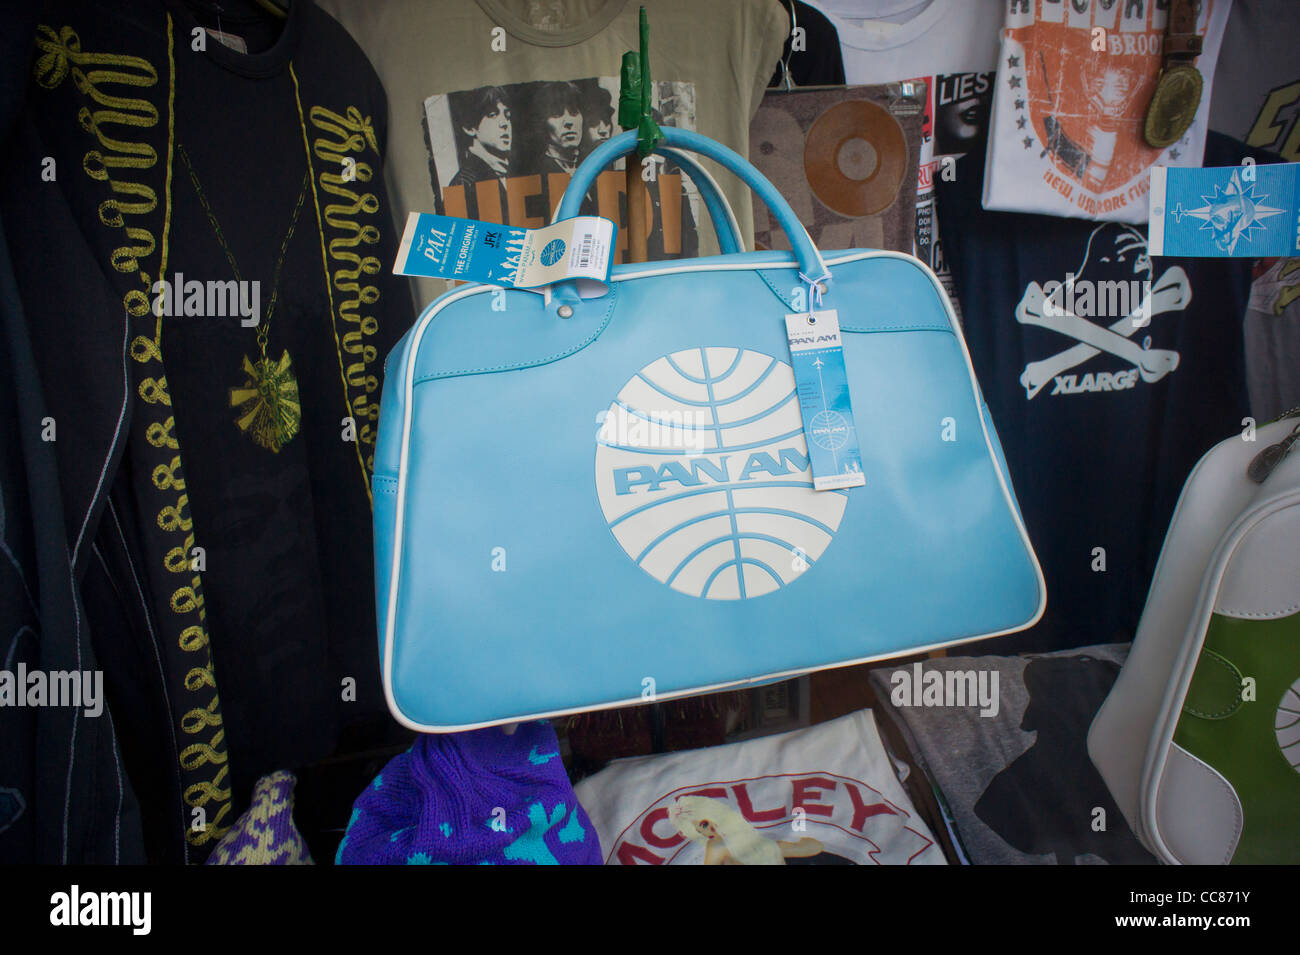 Maletas y bolsas relacionadas con el programa de televisión de ABC "Pan Am"  es visto en una tienda de descuento en Nueva York Fotografía de stock -  Alamy